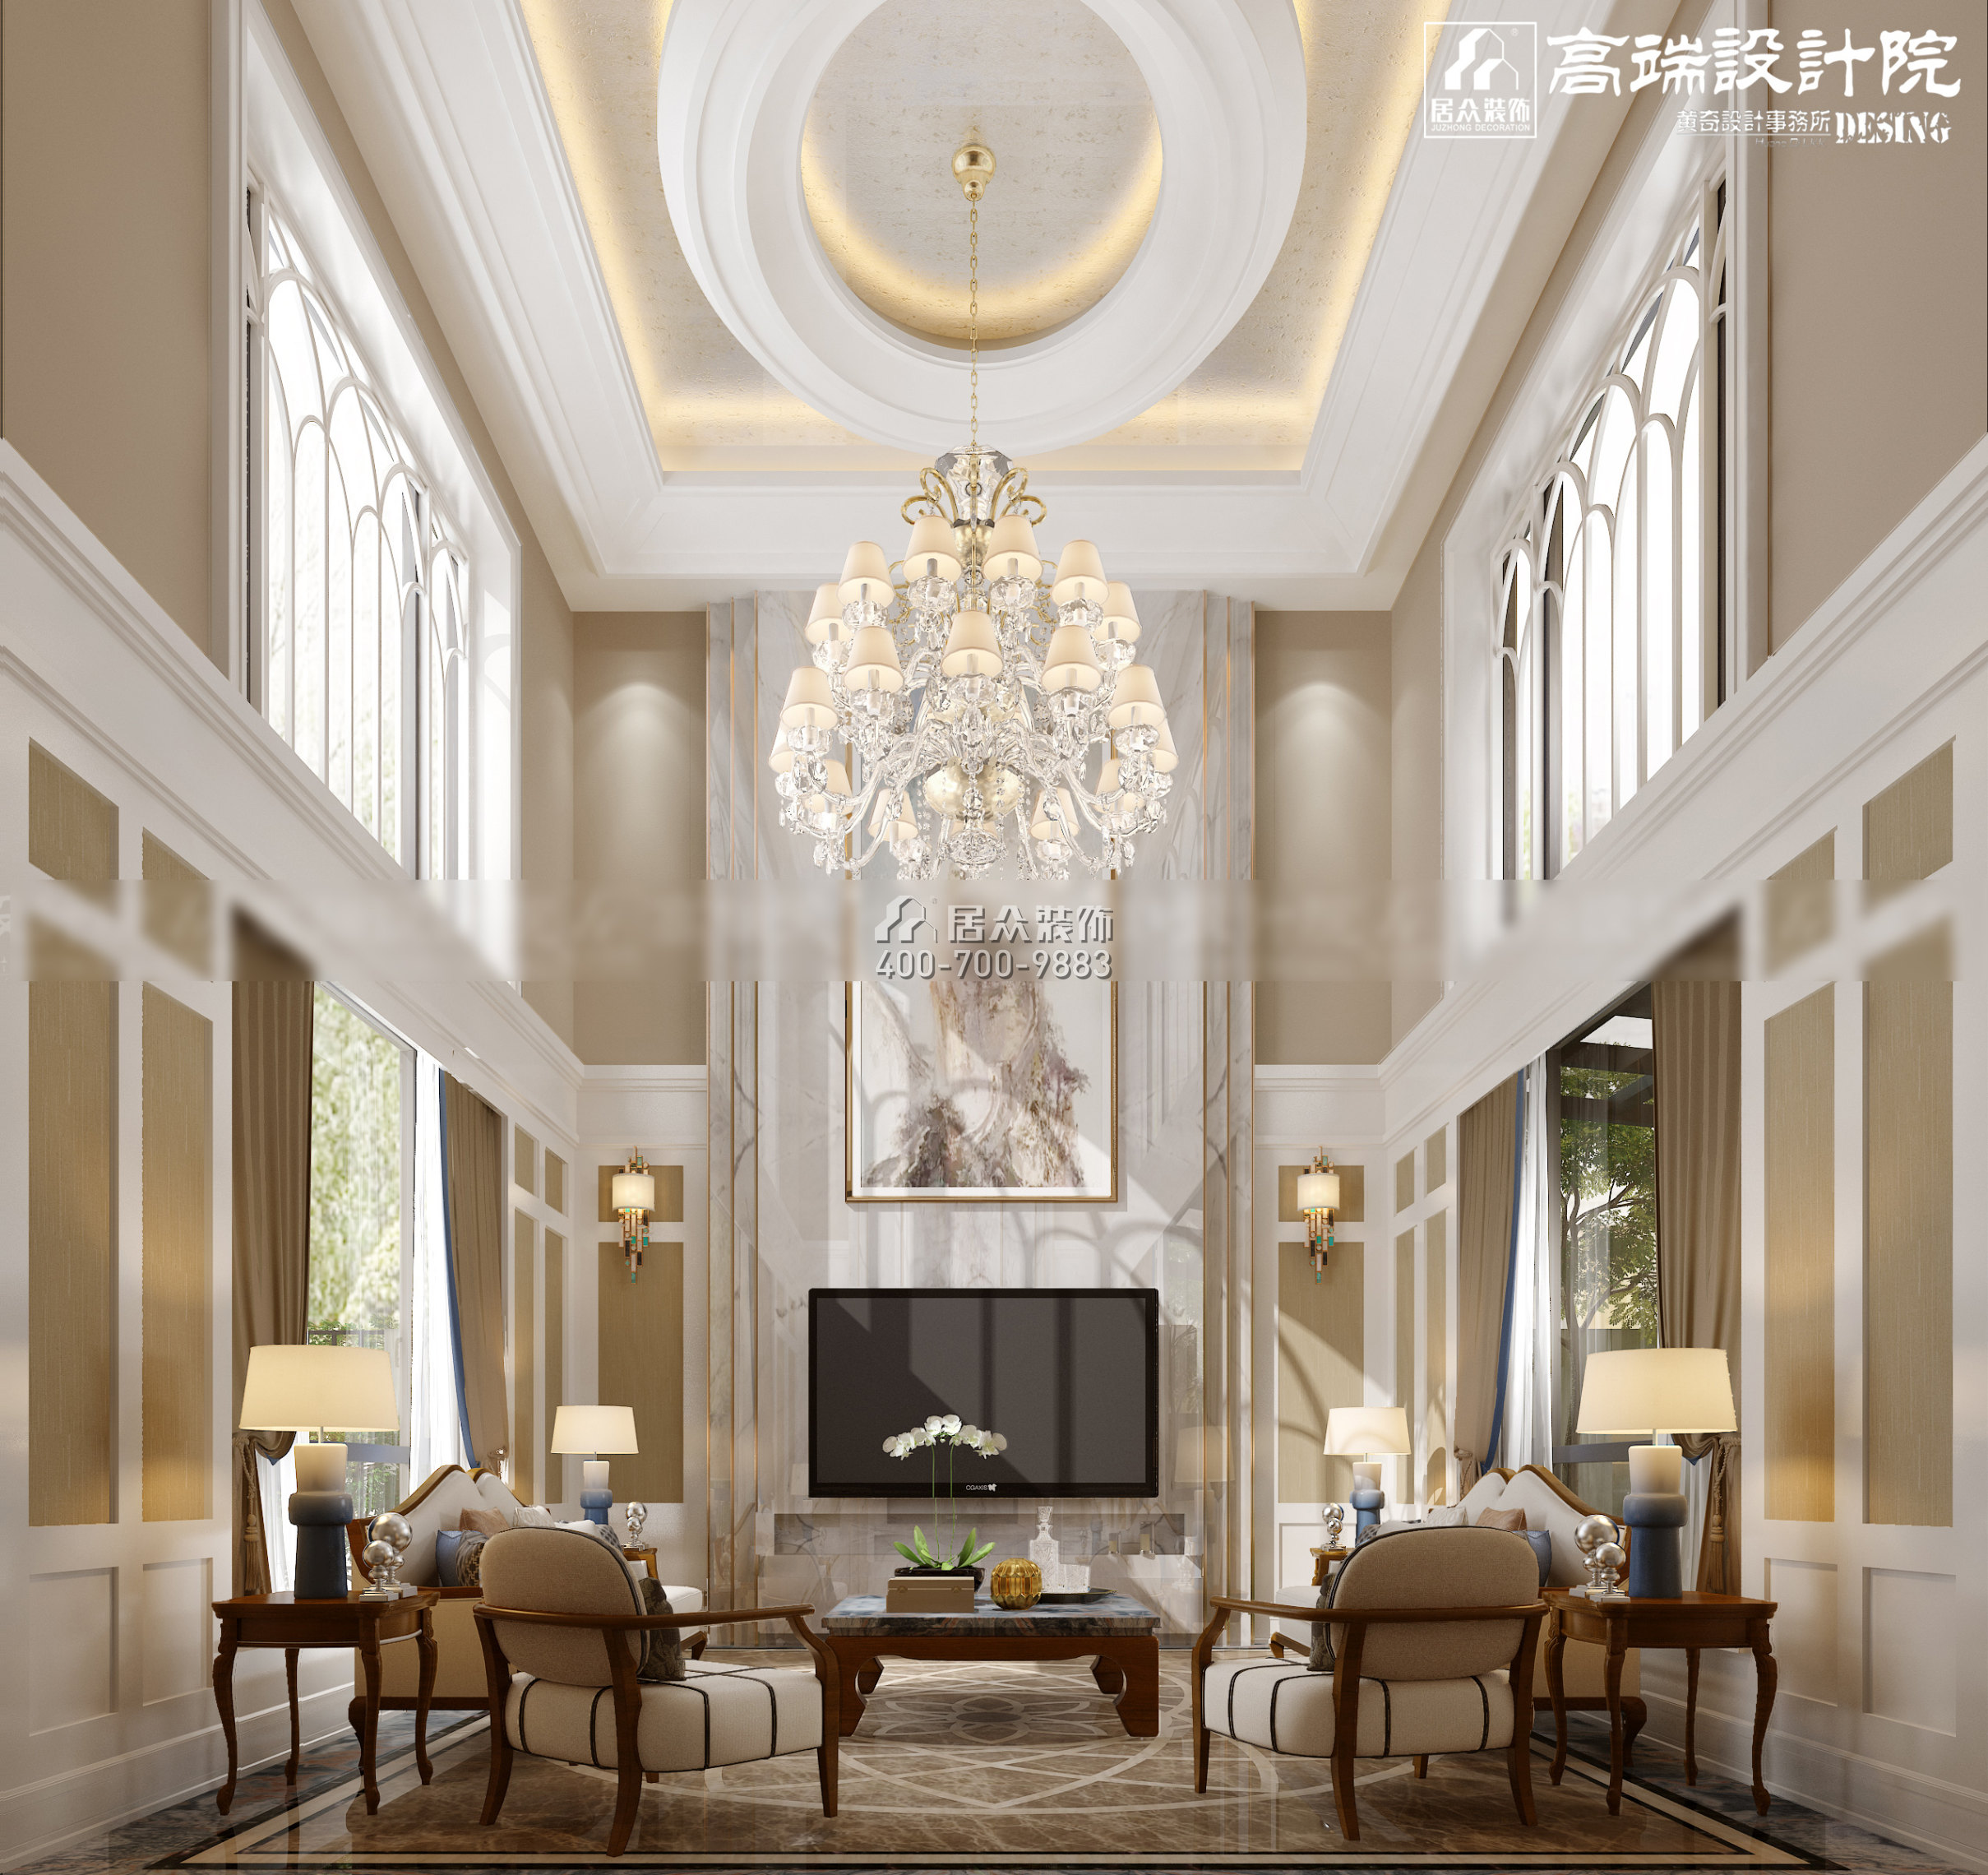 湘江一号560平方米其他风格别墅户型客厅装修效果图